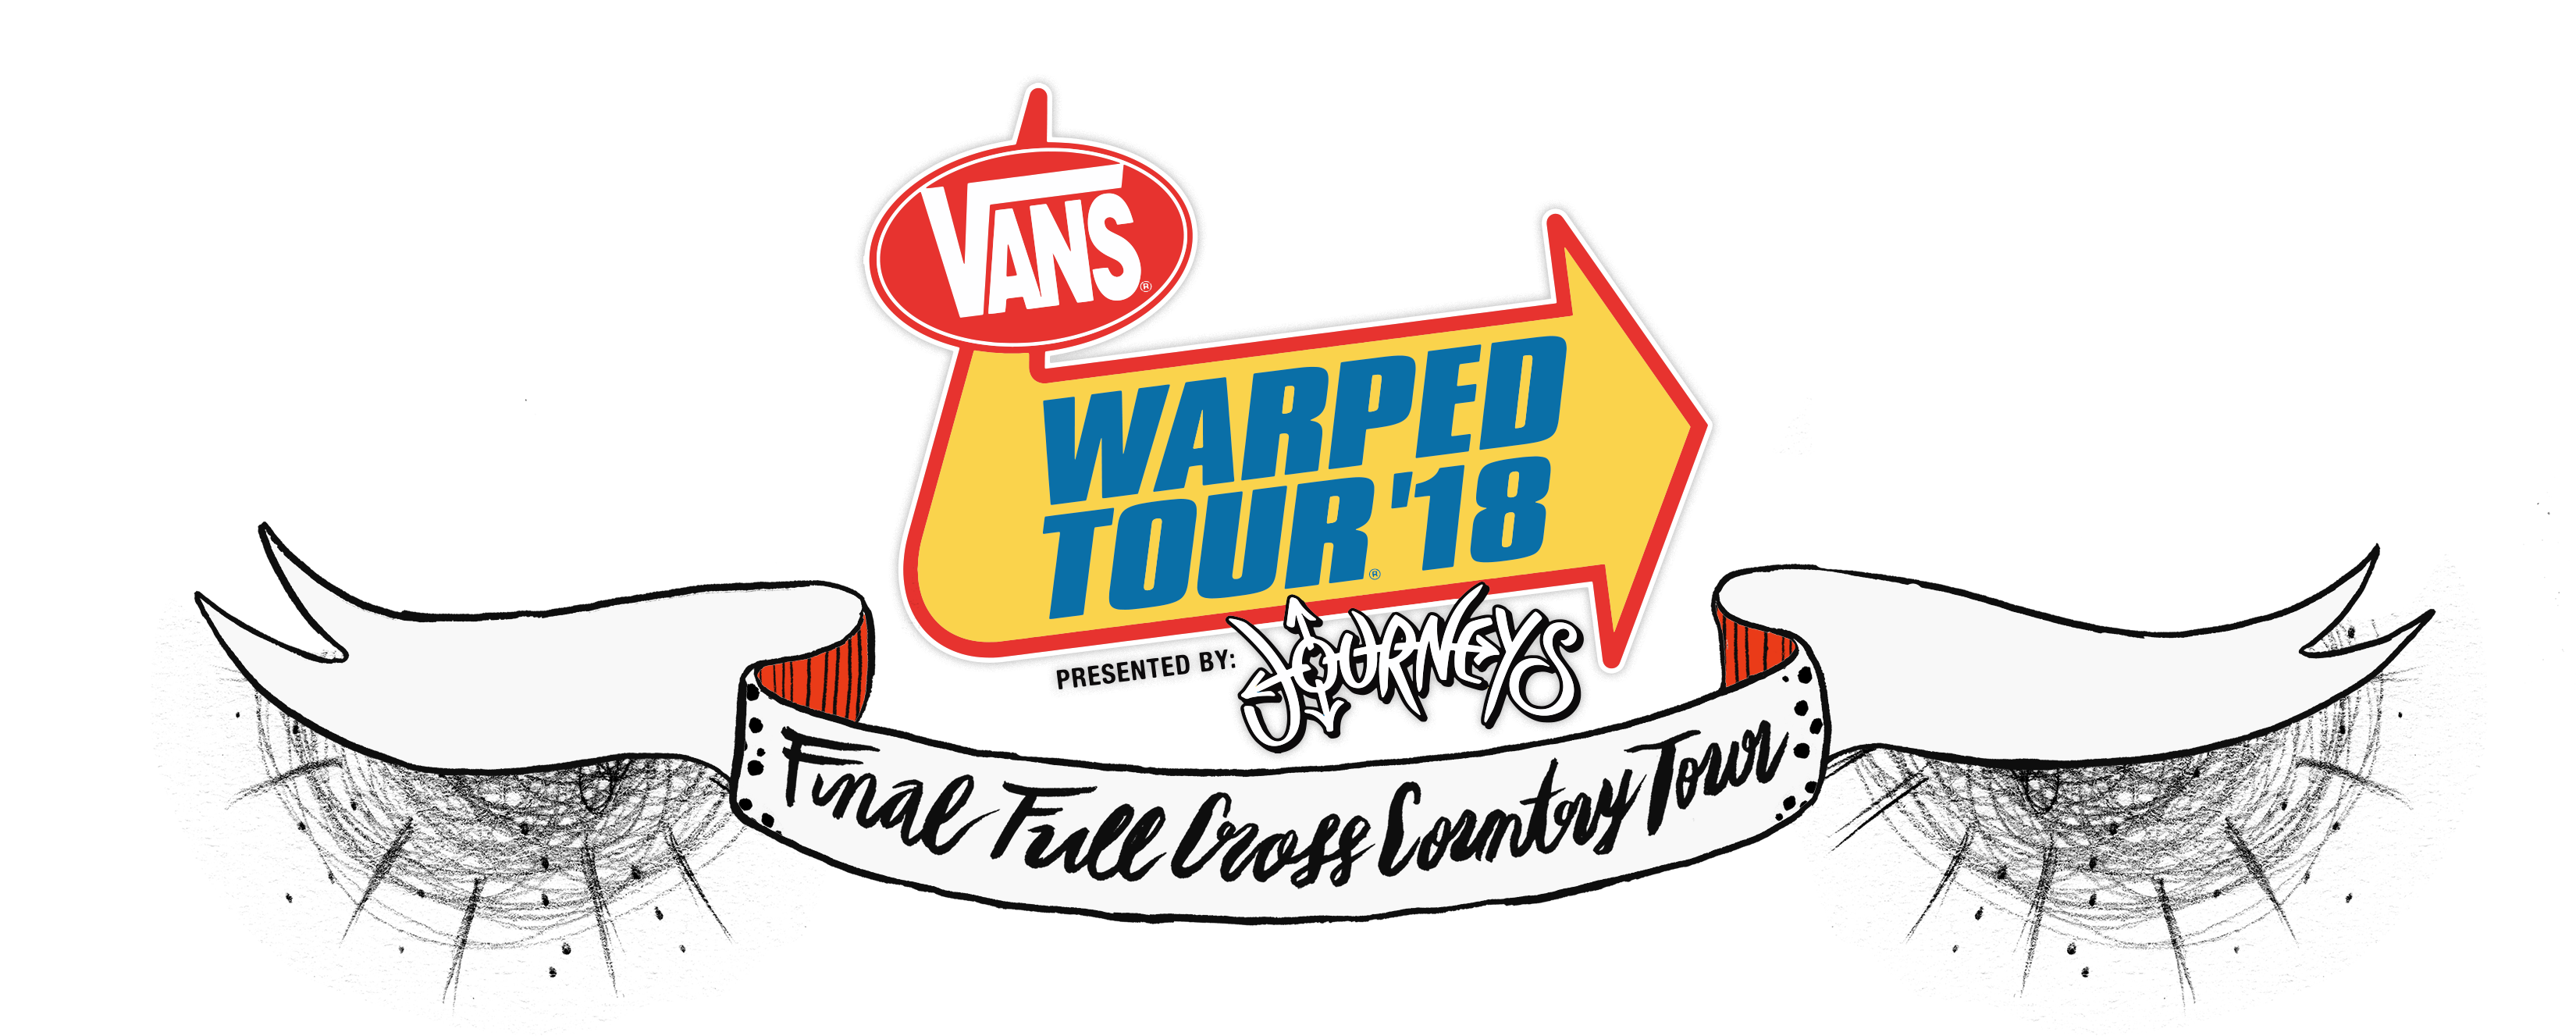 final vans warped tour